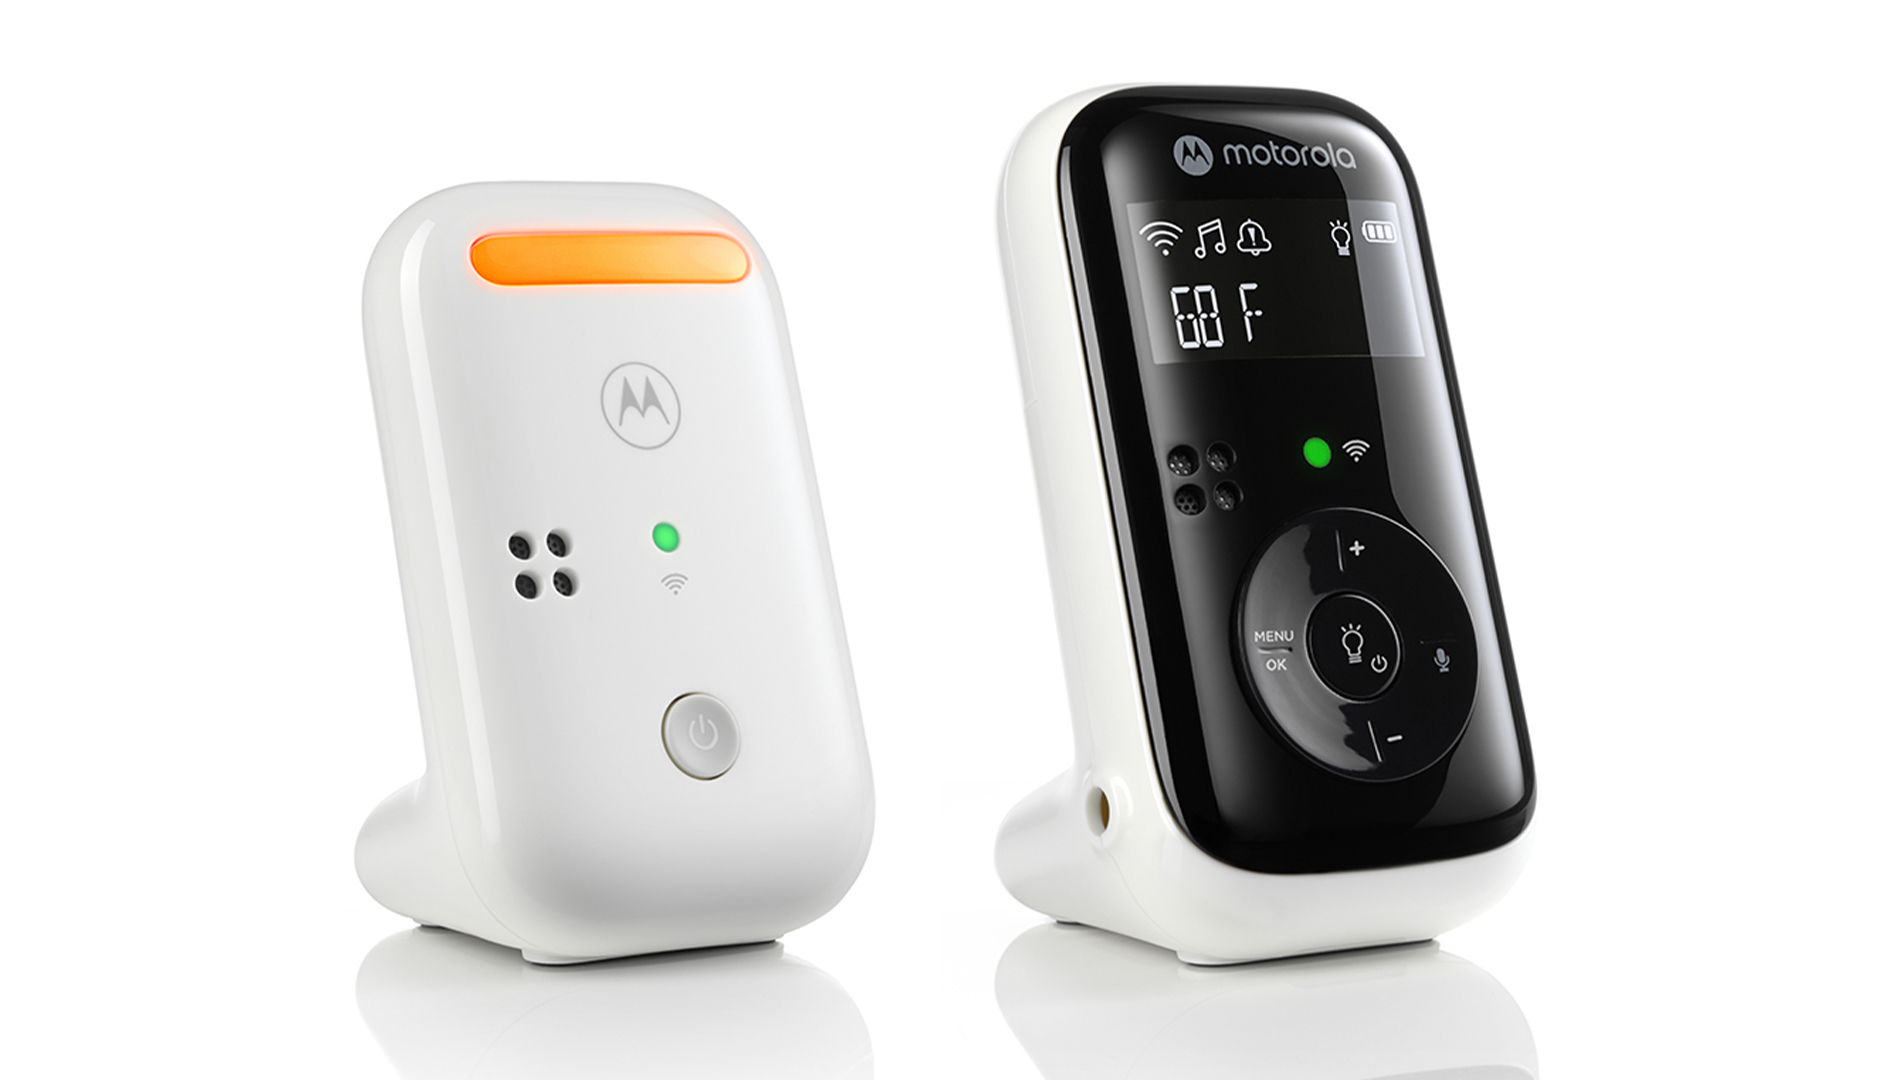 Motorola Nursery  PIP11 Audio Baby Monitor with night light